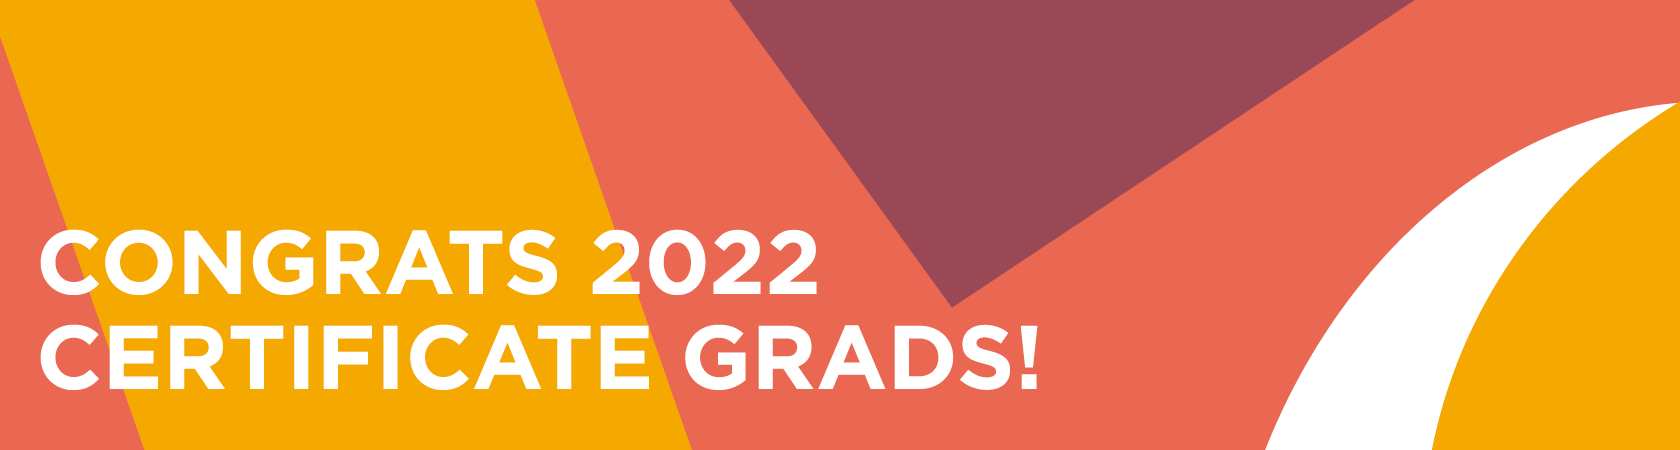 Congratulations RISD CE 2022 certificate graduates